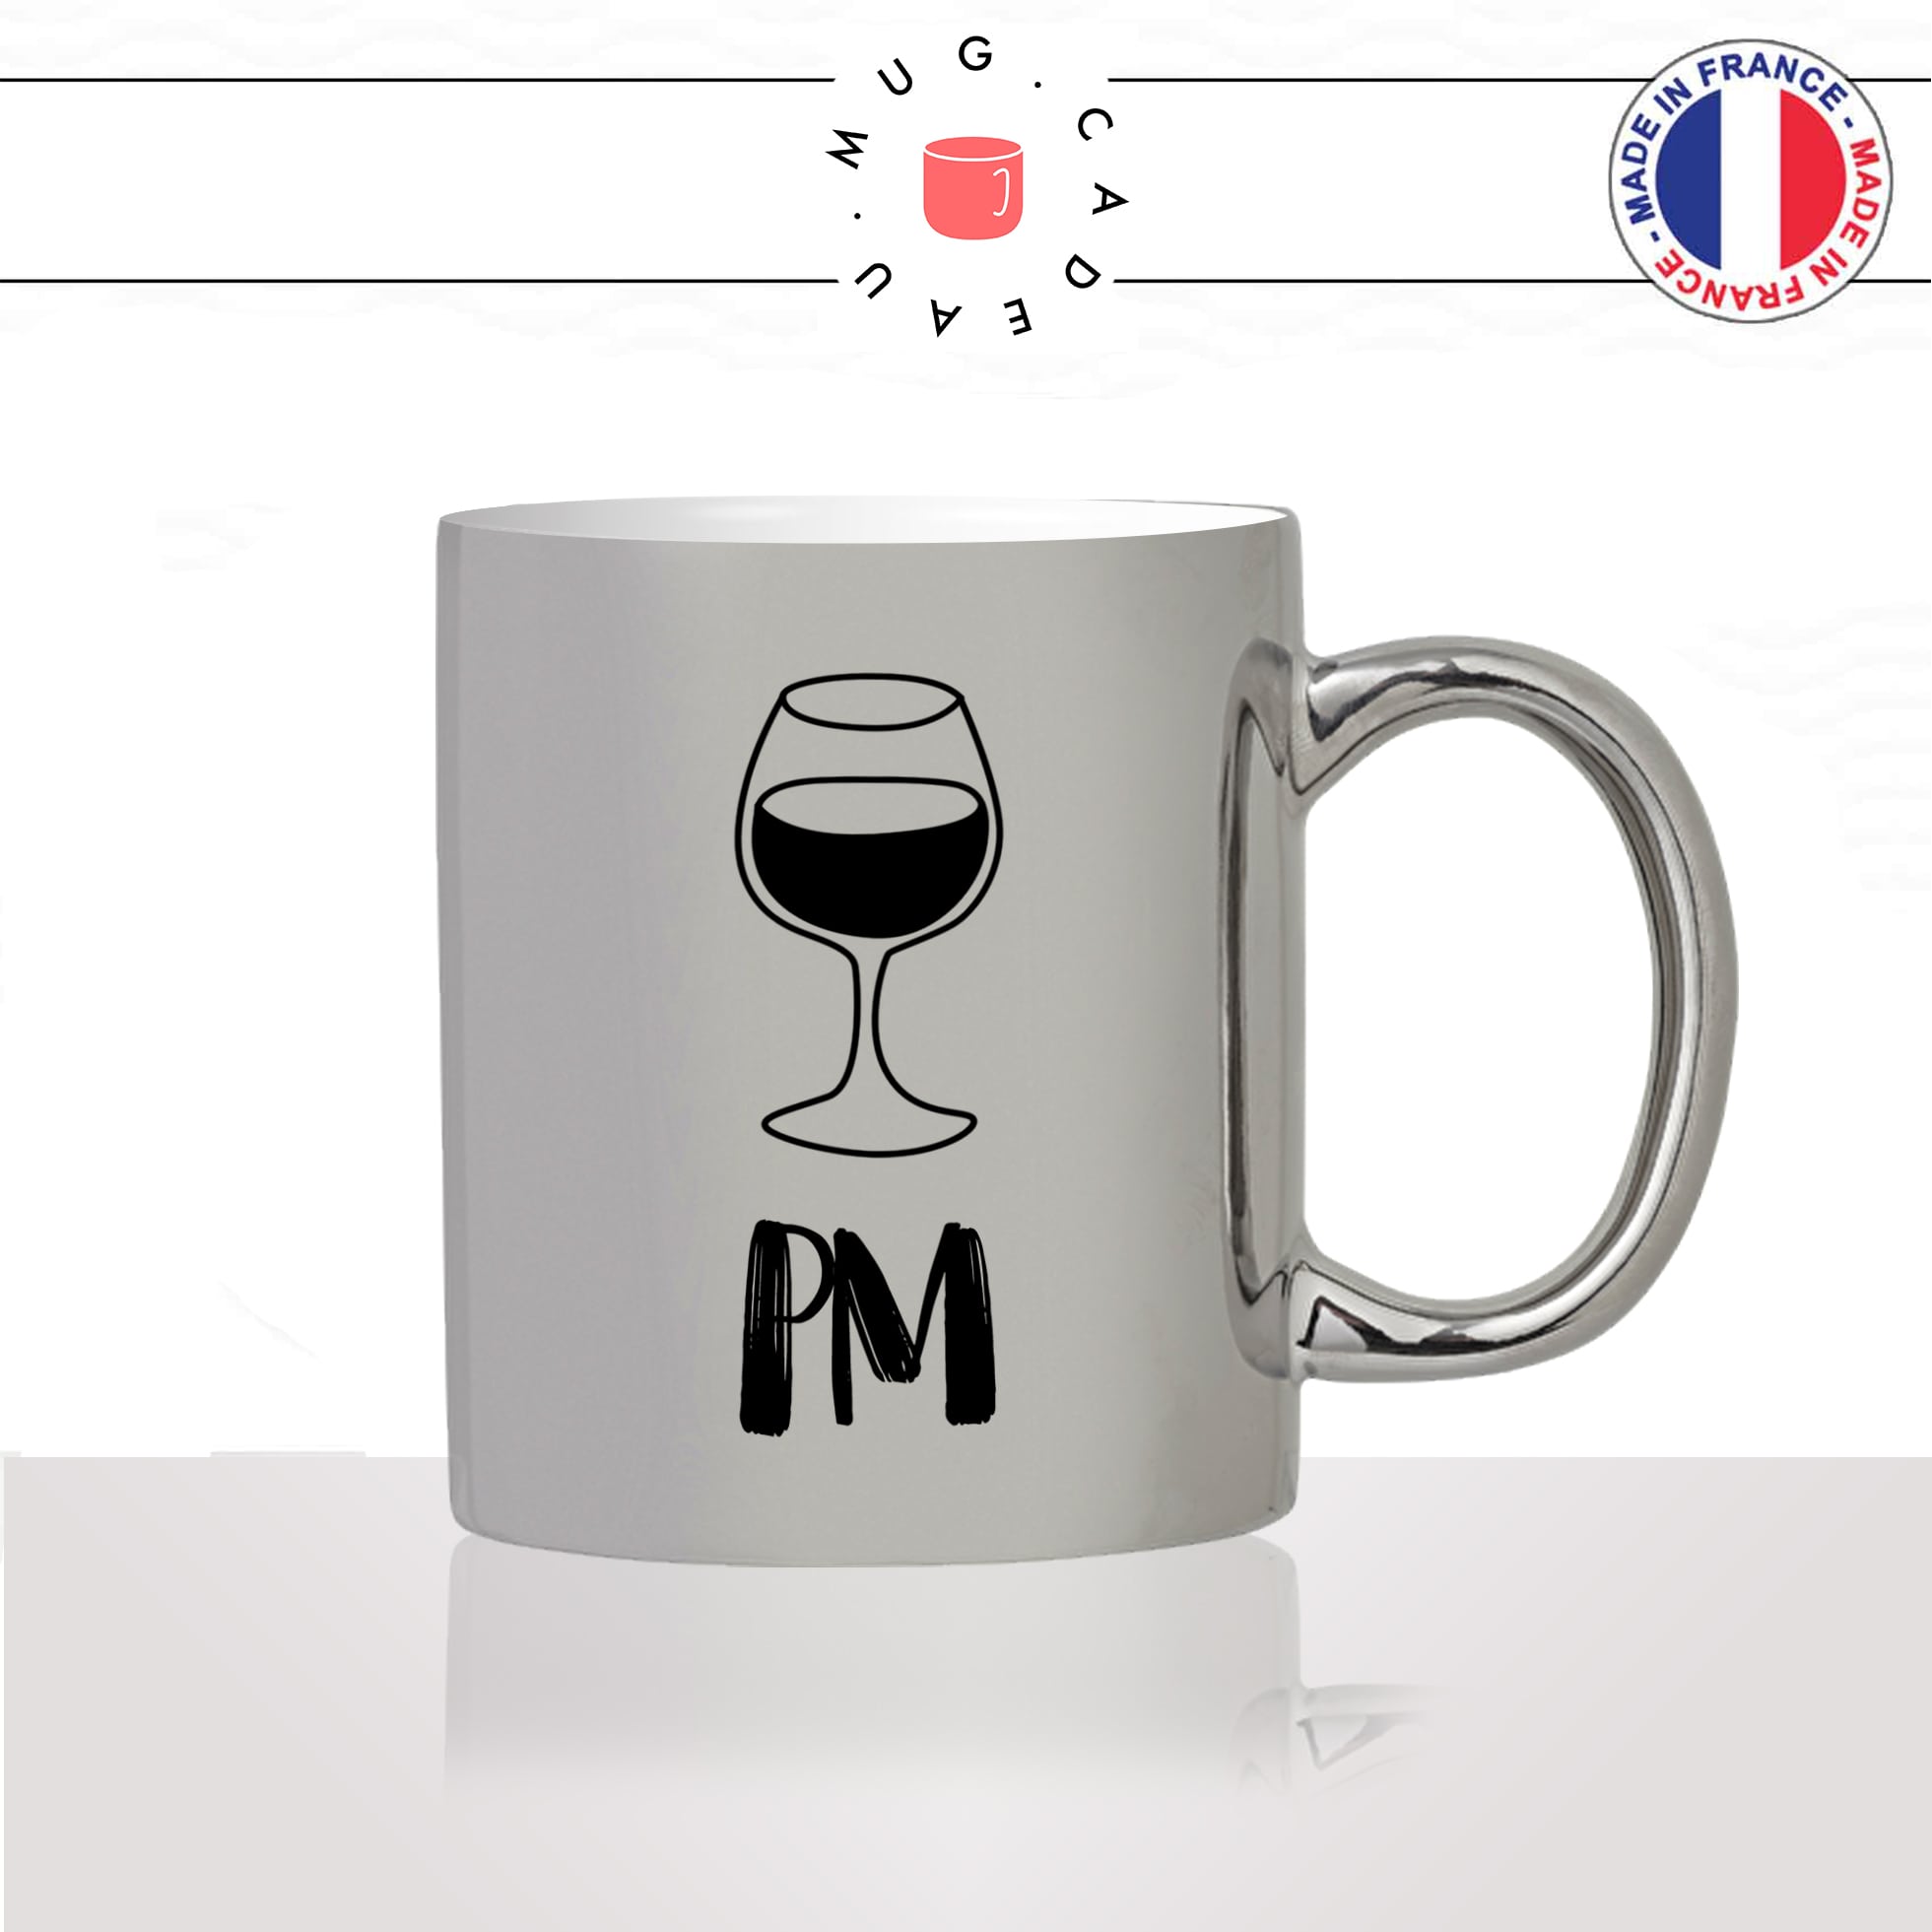 mug-tasse-argent-argenté-silver-am-pm-matin-soir-coffee-apero-vin-rouge-rosé-blanc-verre-a-pied-humour-idée-cadeau-fun-cool-café-thé2-min